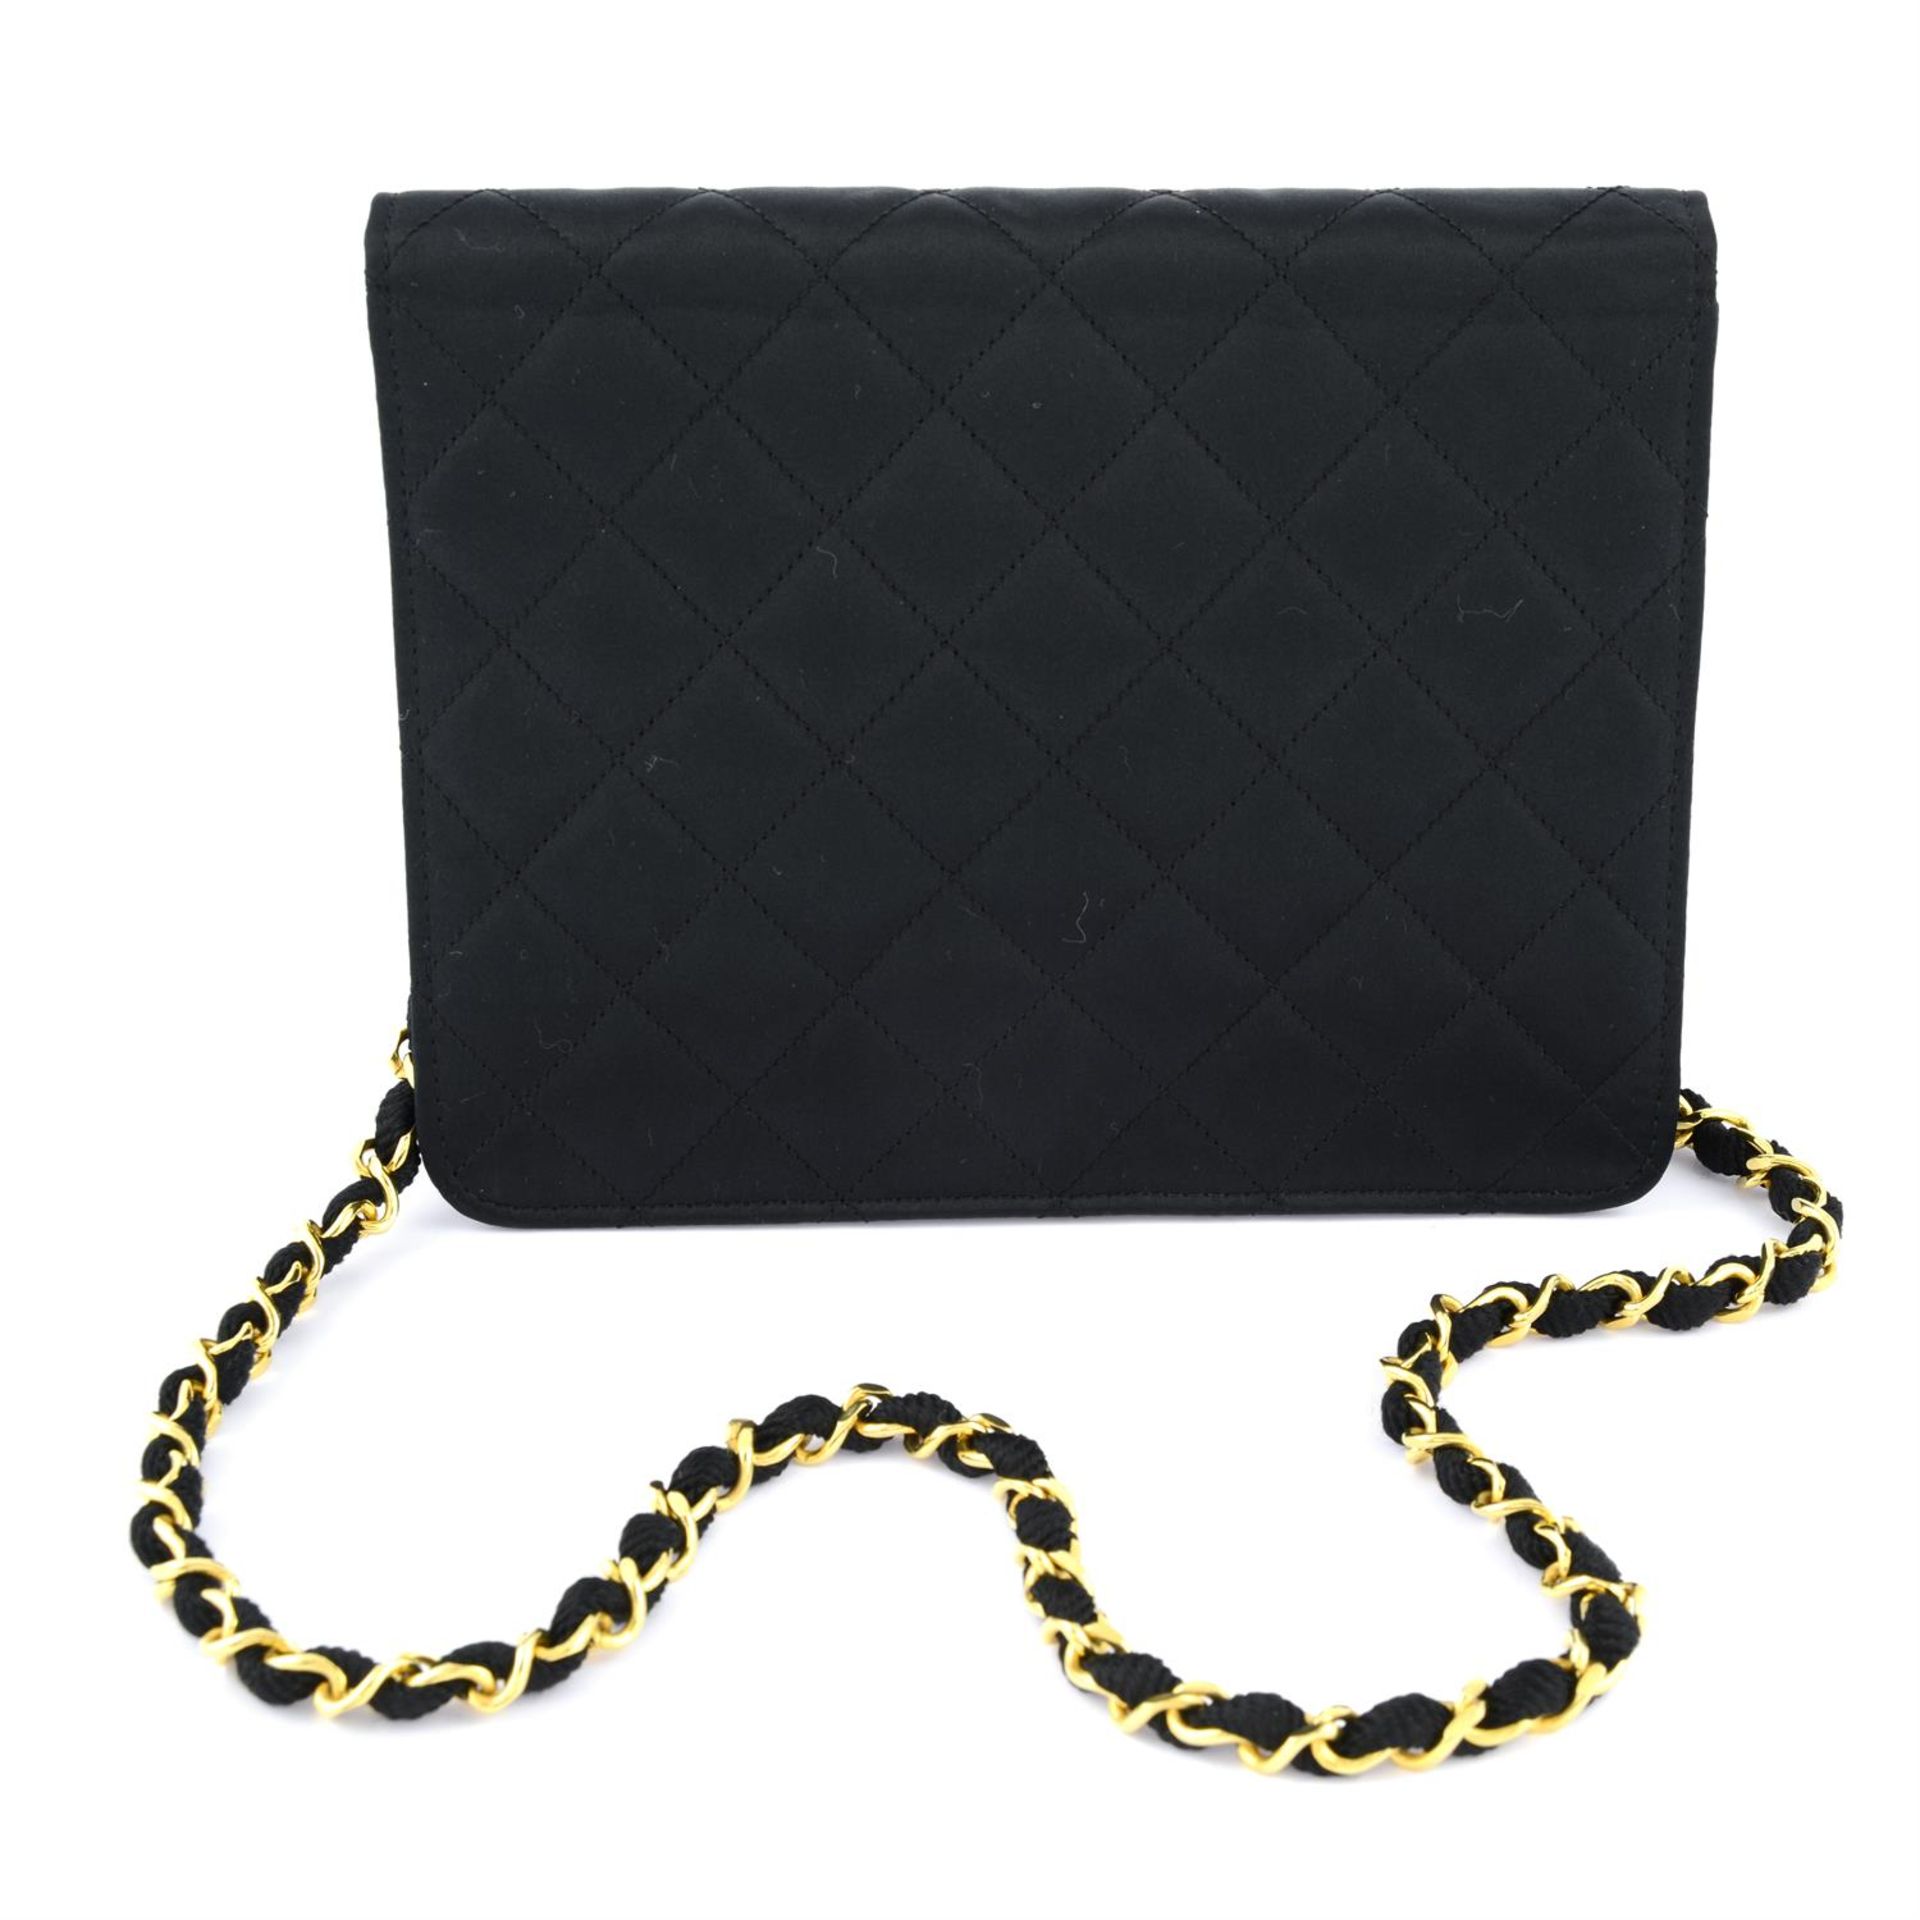 CHANEL - a small black satin handbag. - Image 2 of 4